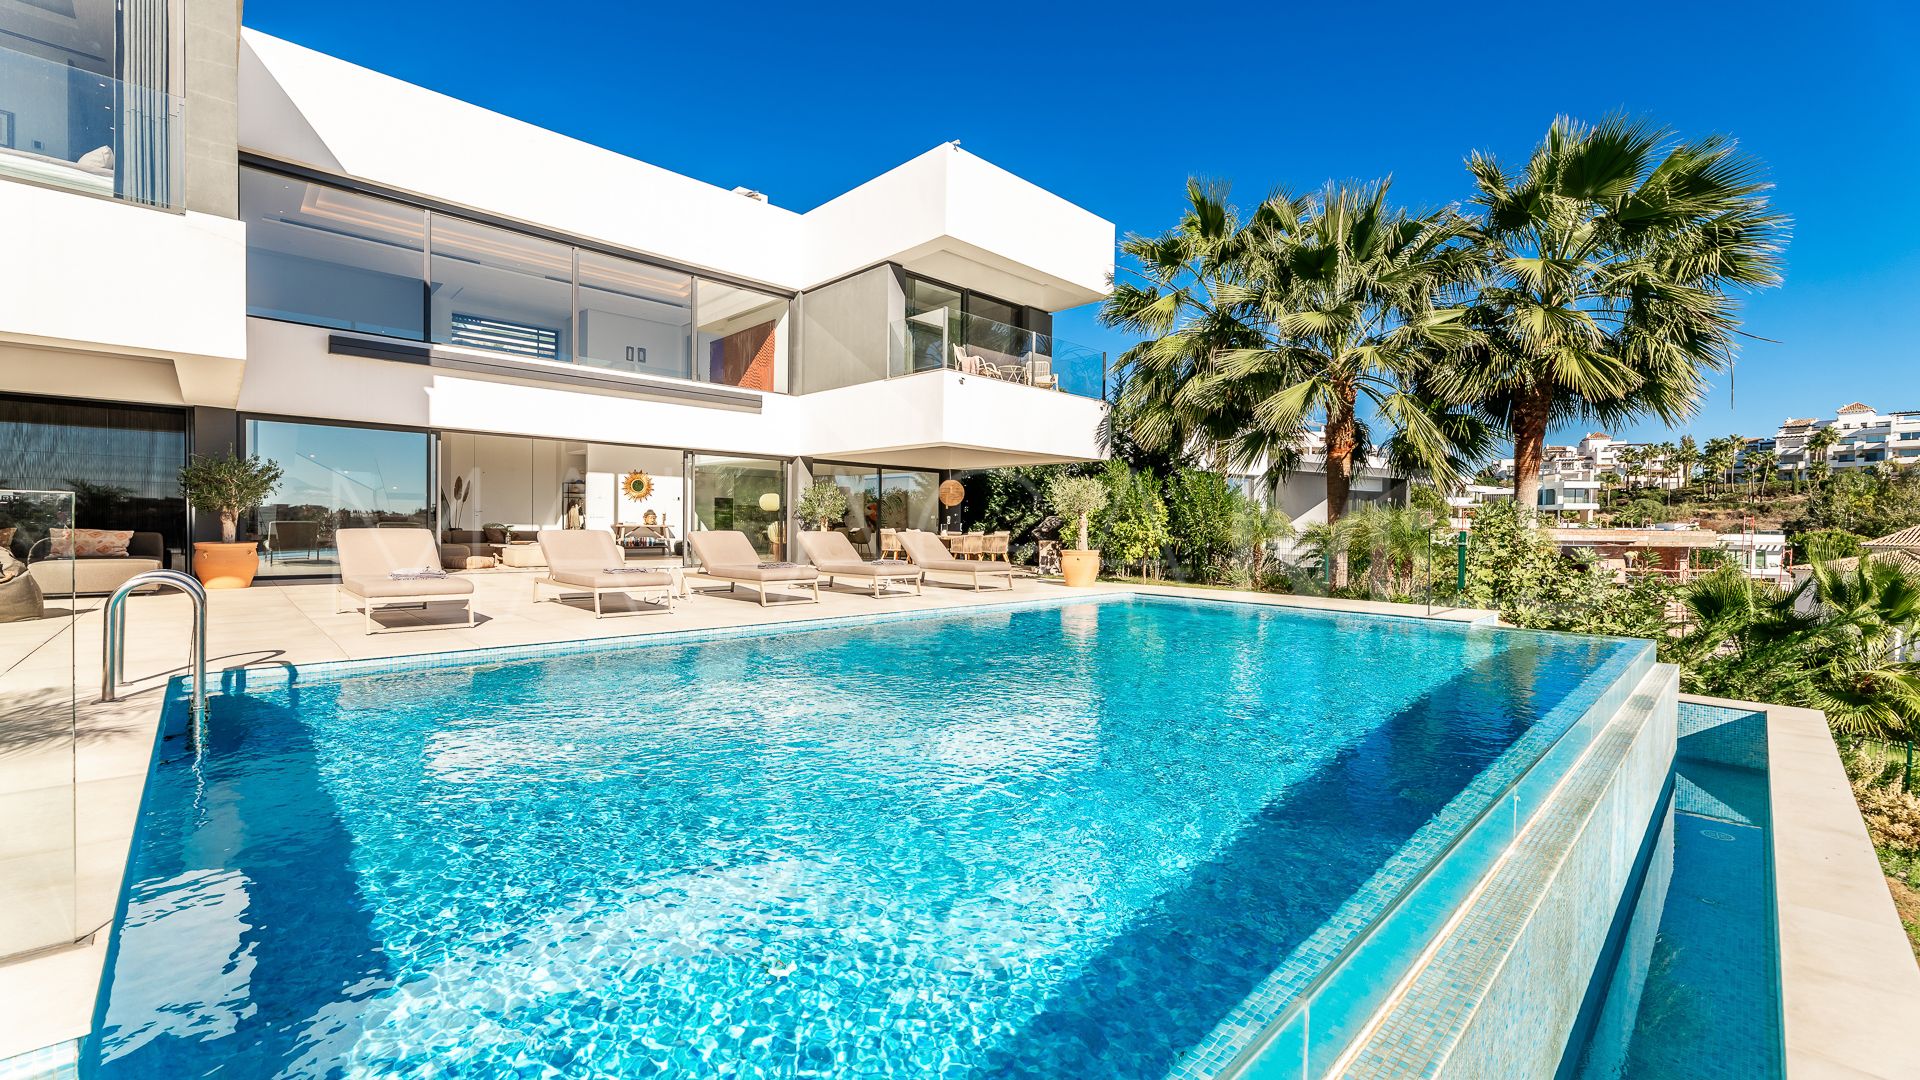 Villa for sale in Capanes Sur